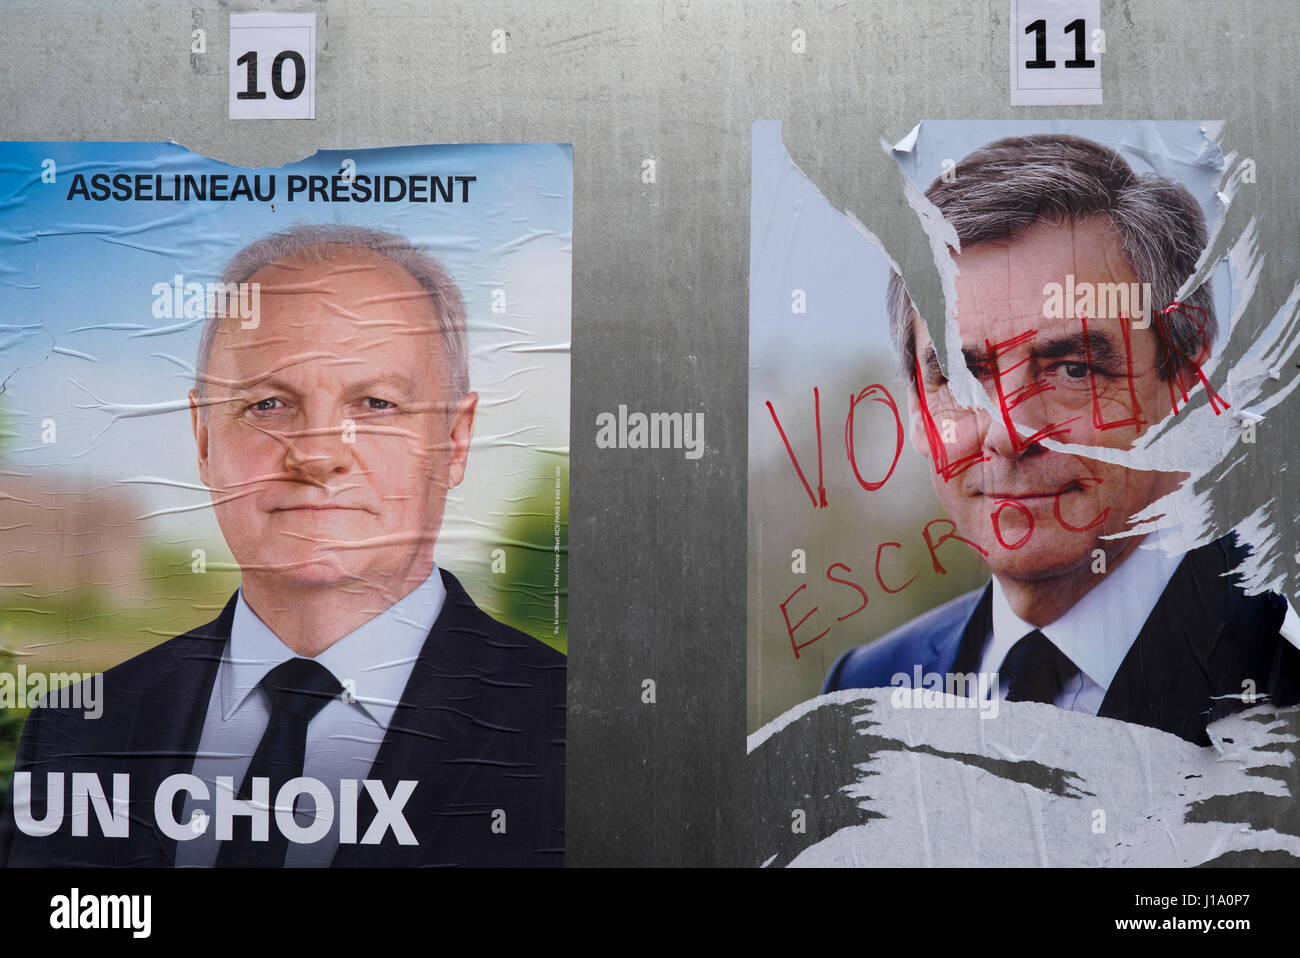 Affiches politiques, élections législatives françaises 2017 Banque D'Images